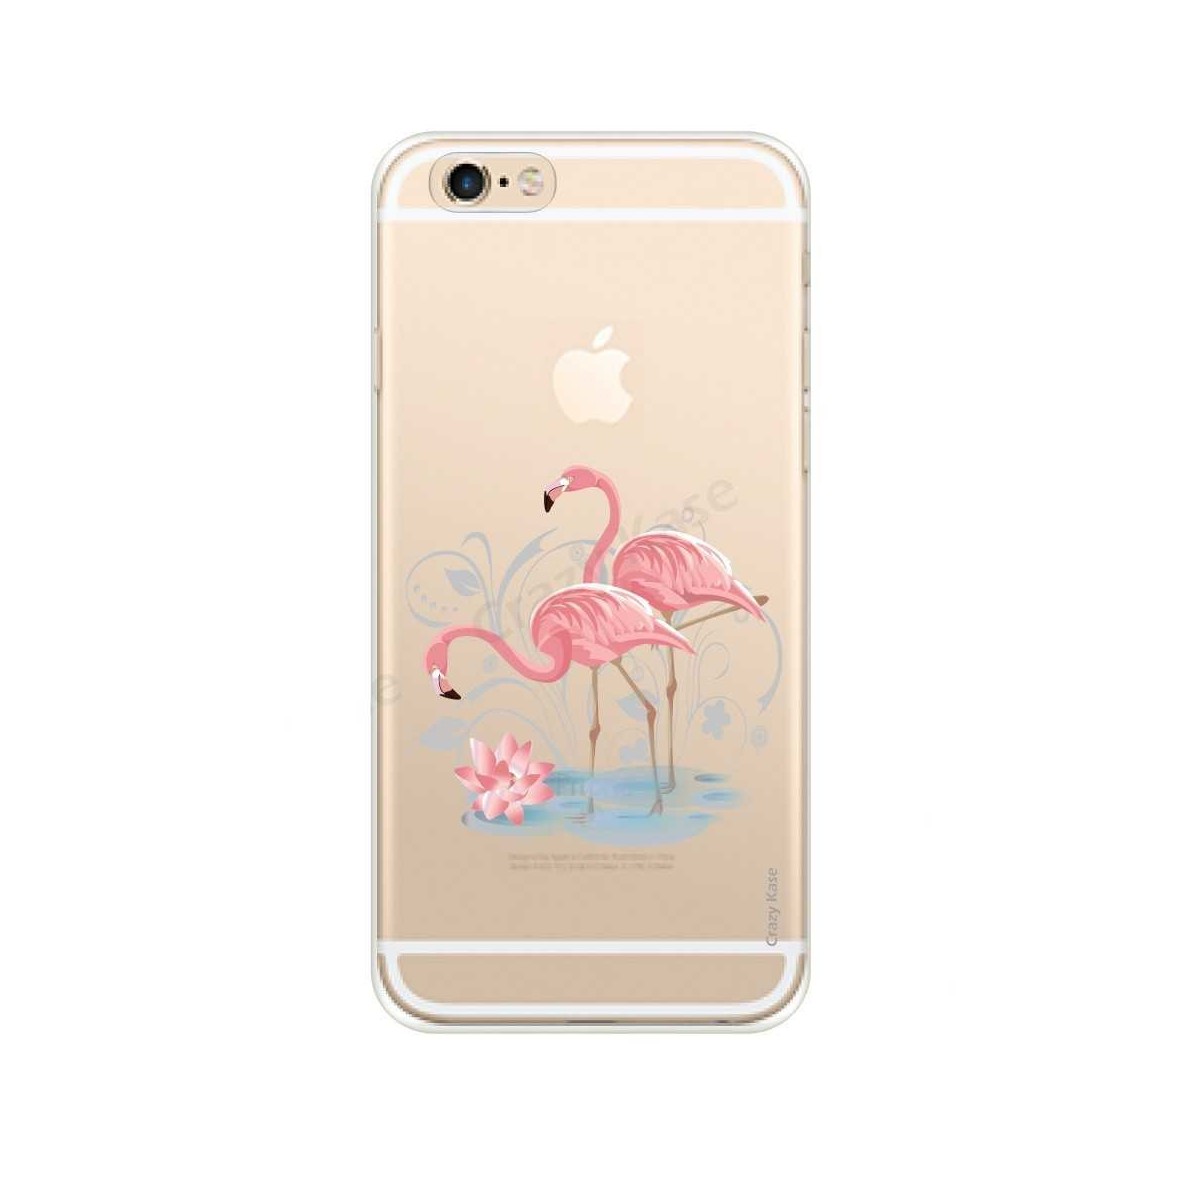 Coque iPhone 6 / 6s souple Flamant rose - Crazy Kase